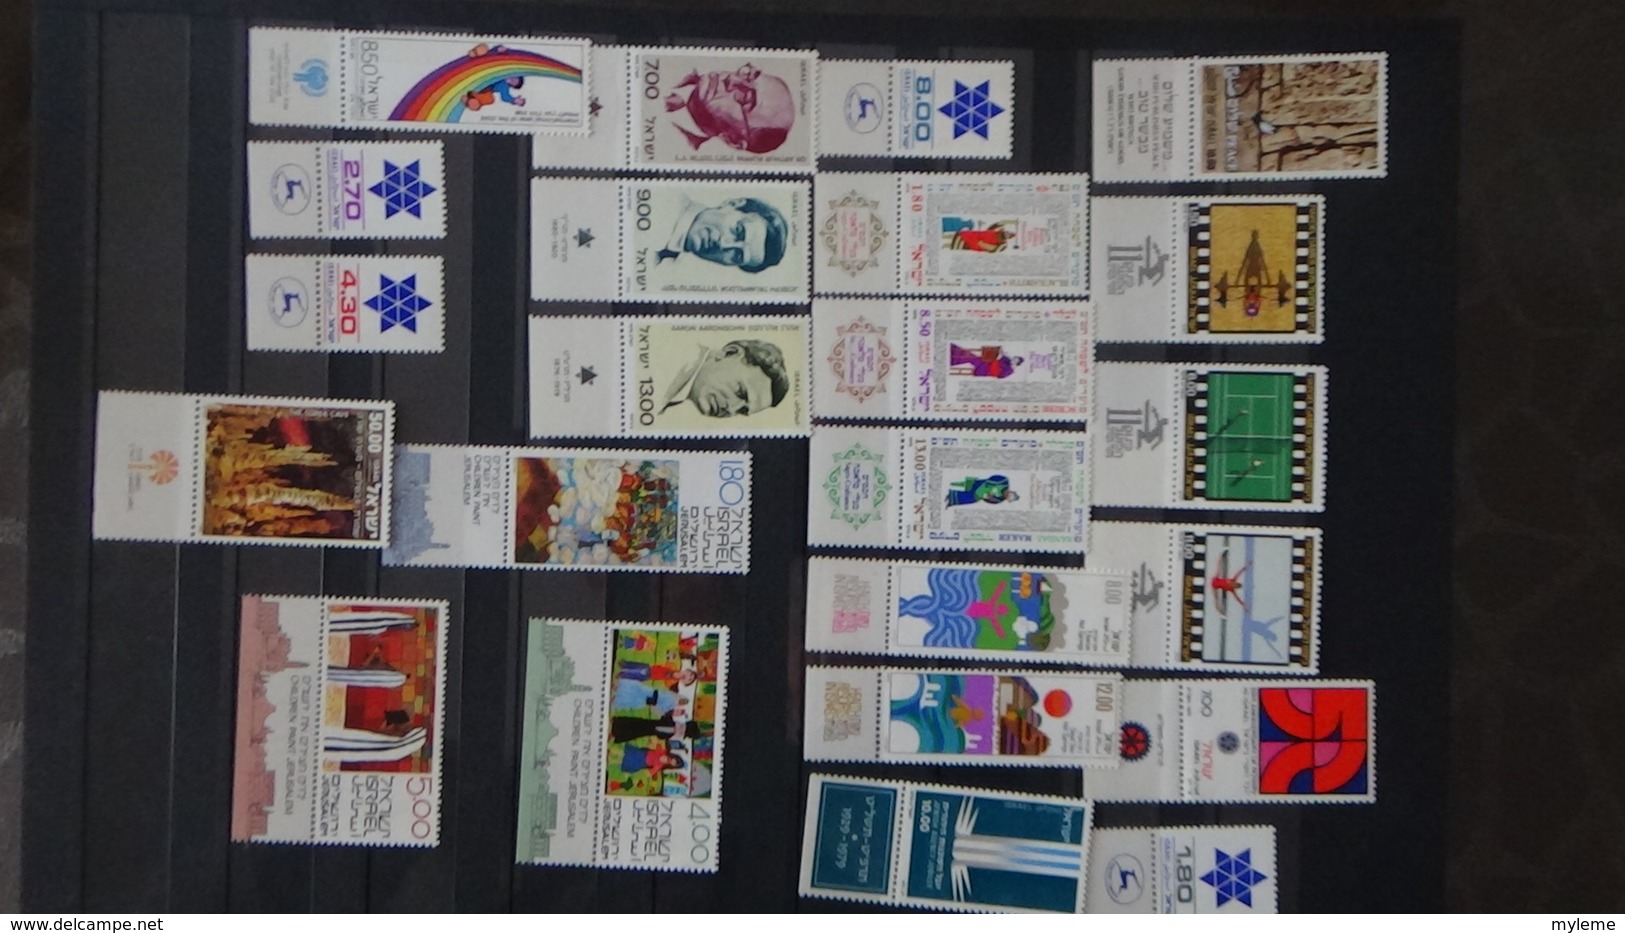 Belle collection d'Israël timbres, blocs, carnets tous **. Côte très sympa !!!